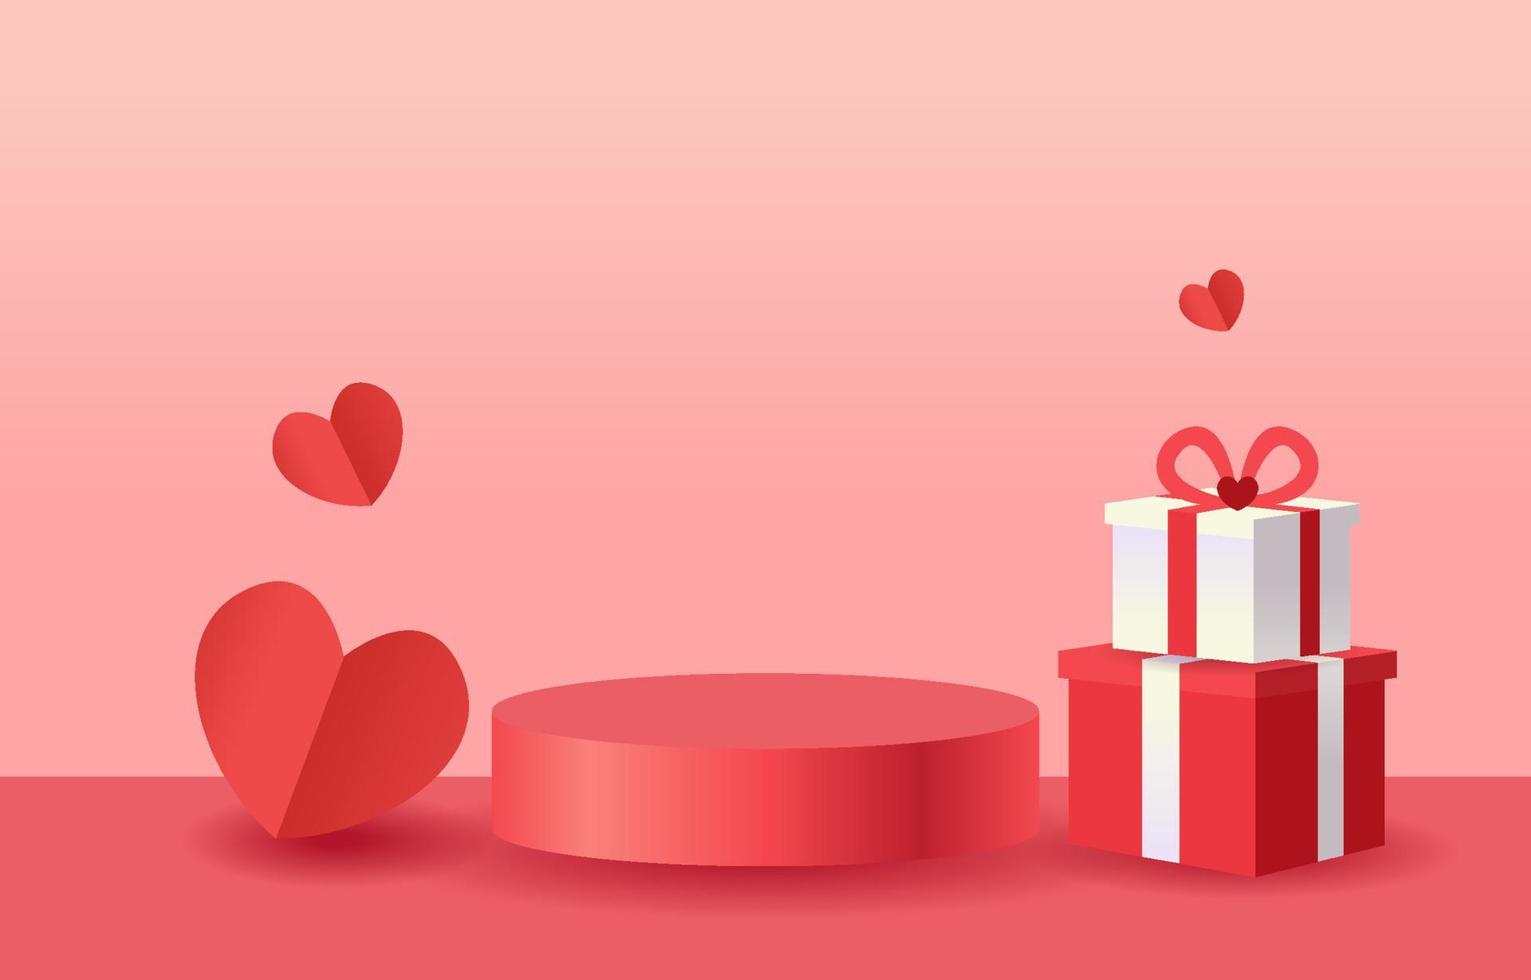 hermoso fondo para San Valentín o amor. el podio cilíndrico es un stand para mostrar productos. decorado con corazones y cajas de regalo. diseño para banner, web, aplicación móvil, tarjeta, fondo, promoción. vector